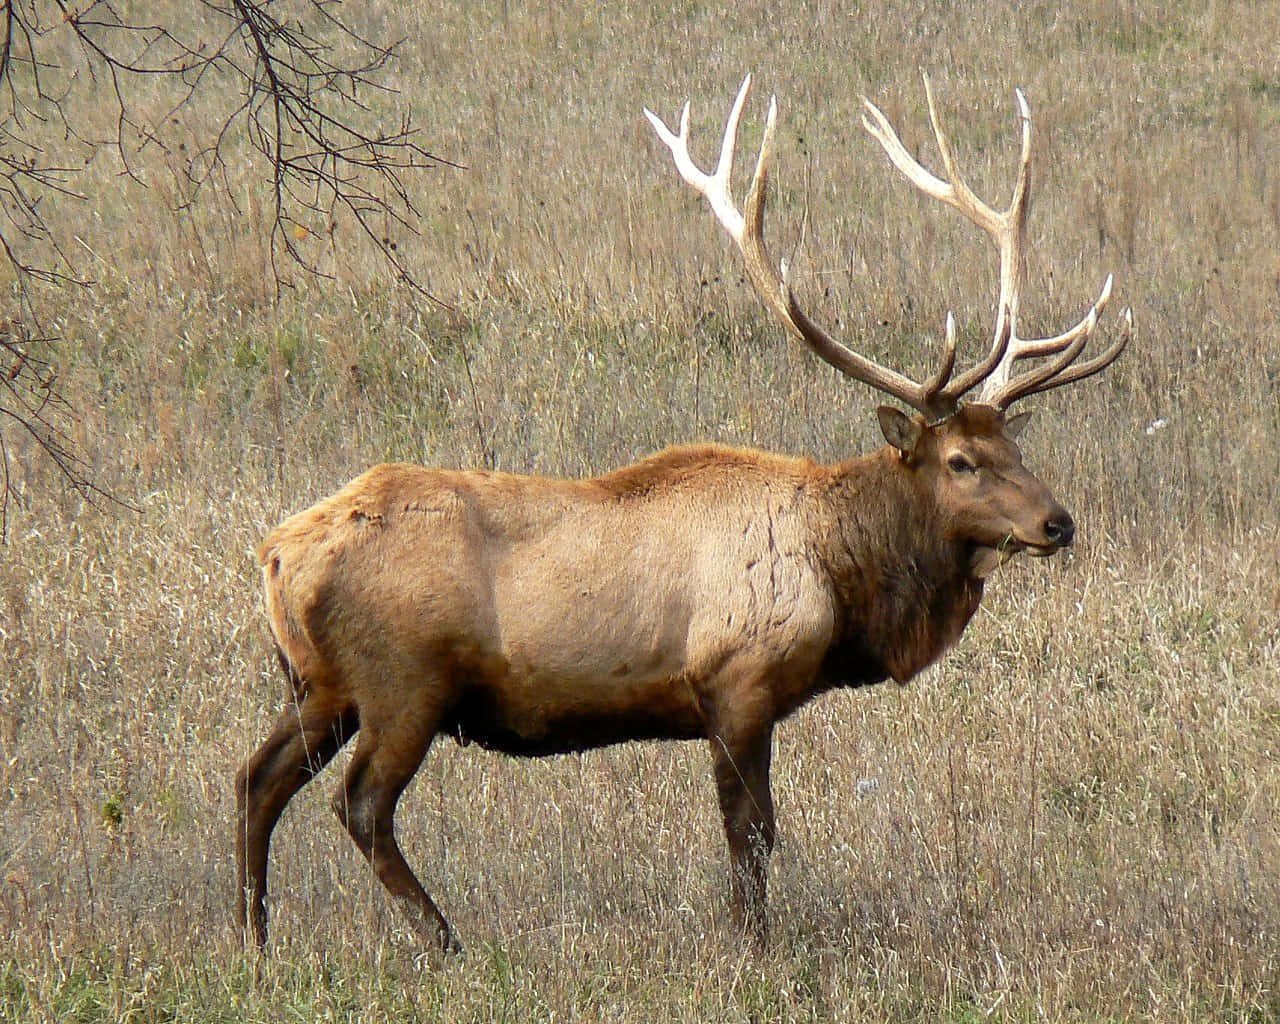 A majestic elk in its natural habitat